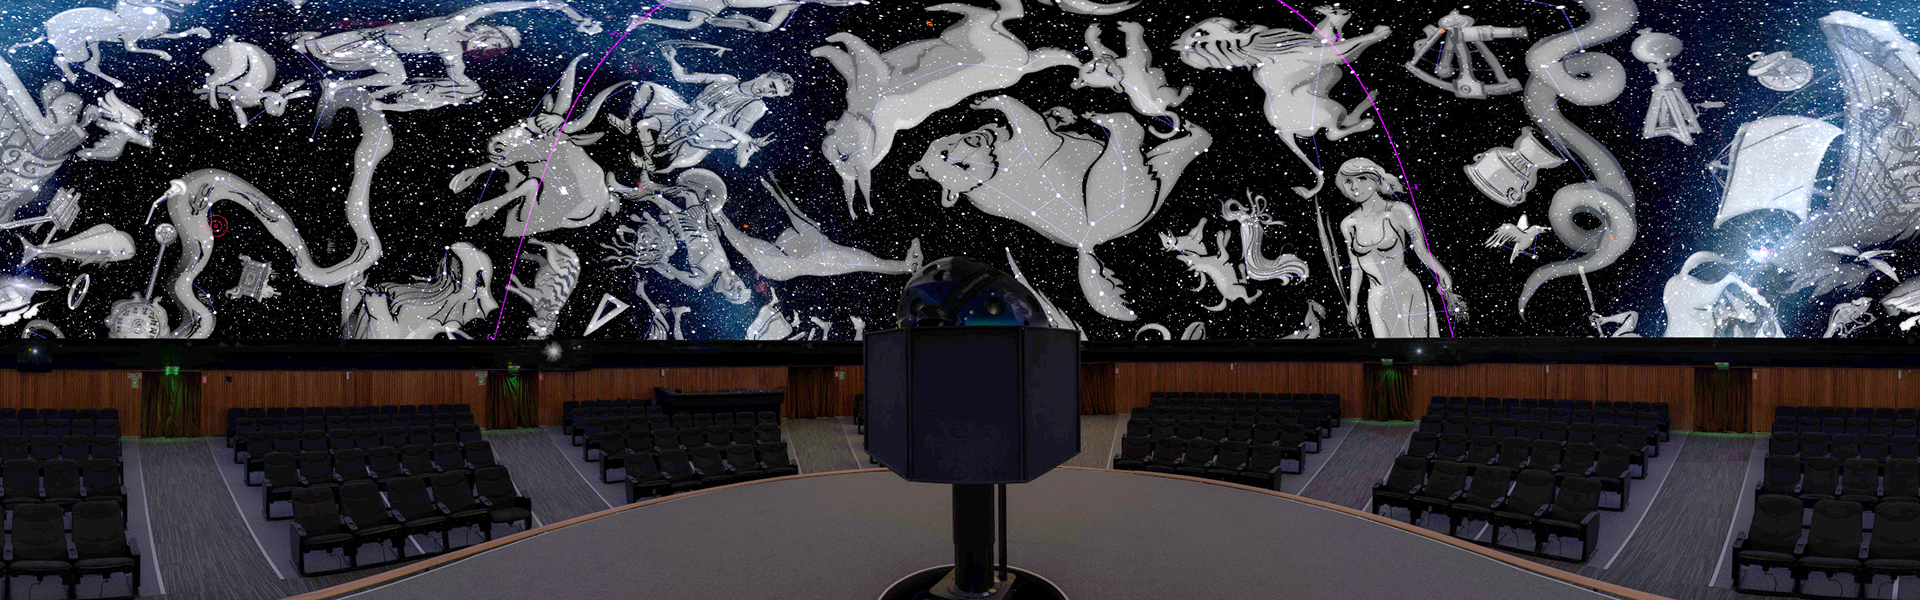 imagen dentro de la sala del Planetario proyectando en la cúpula imagenes de las constelaciones en tonos grises